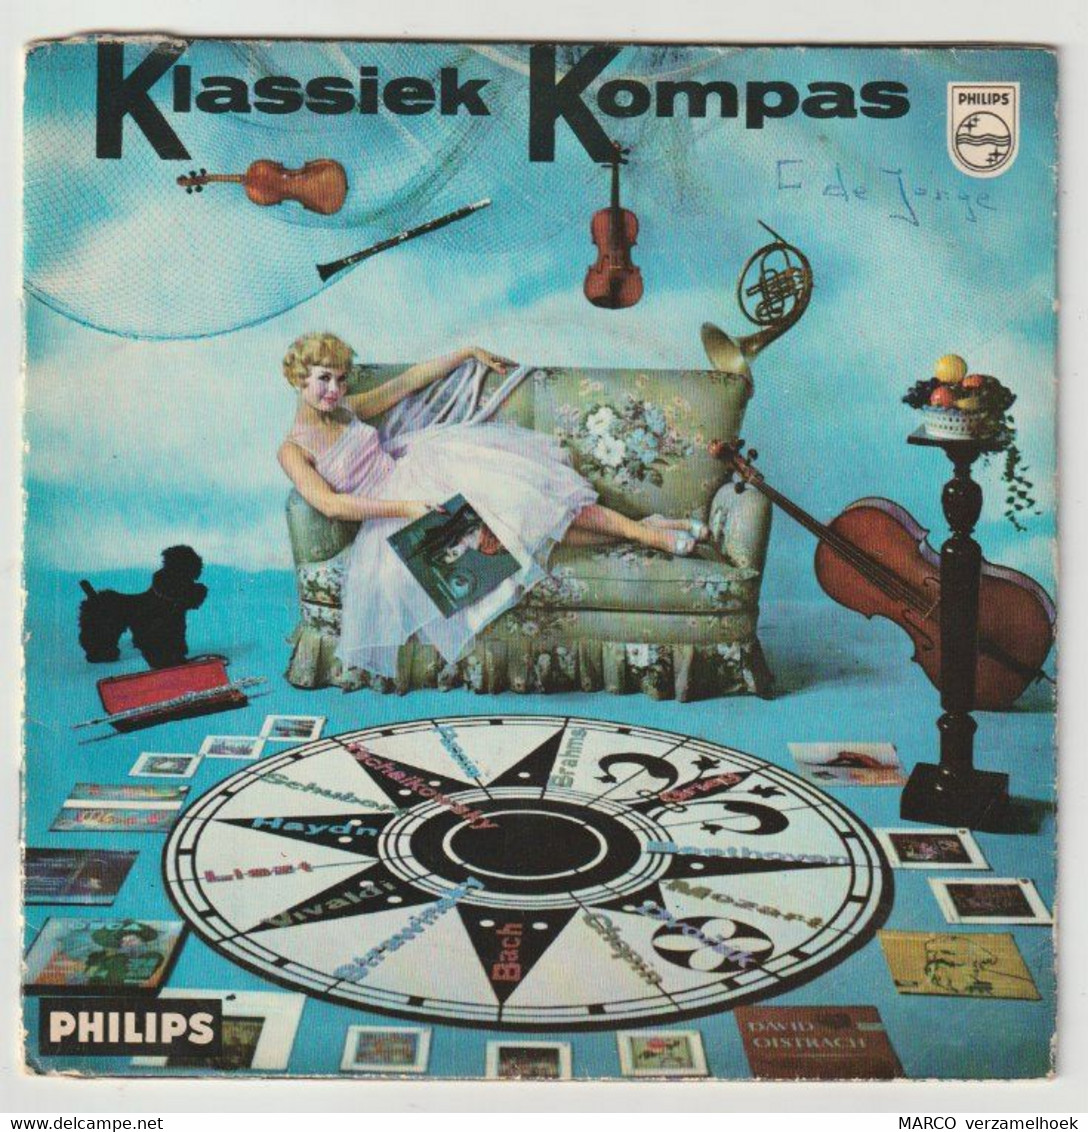 45T Single Klassiek Kompas 1959 PHILIPS Minigroove 099 793 - Opera